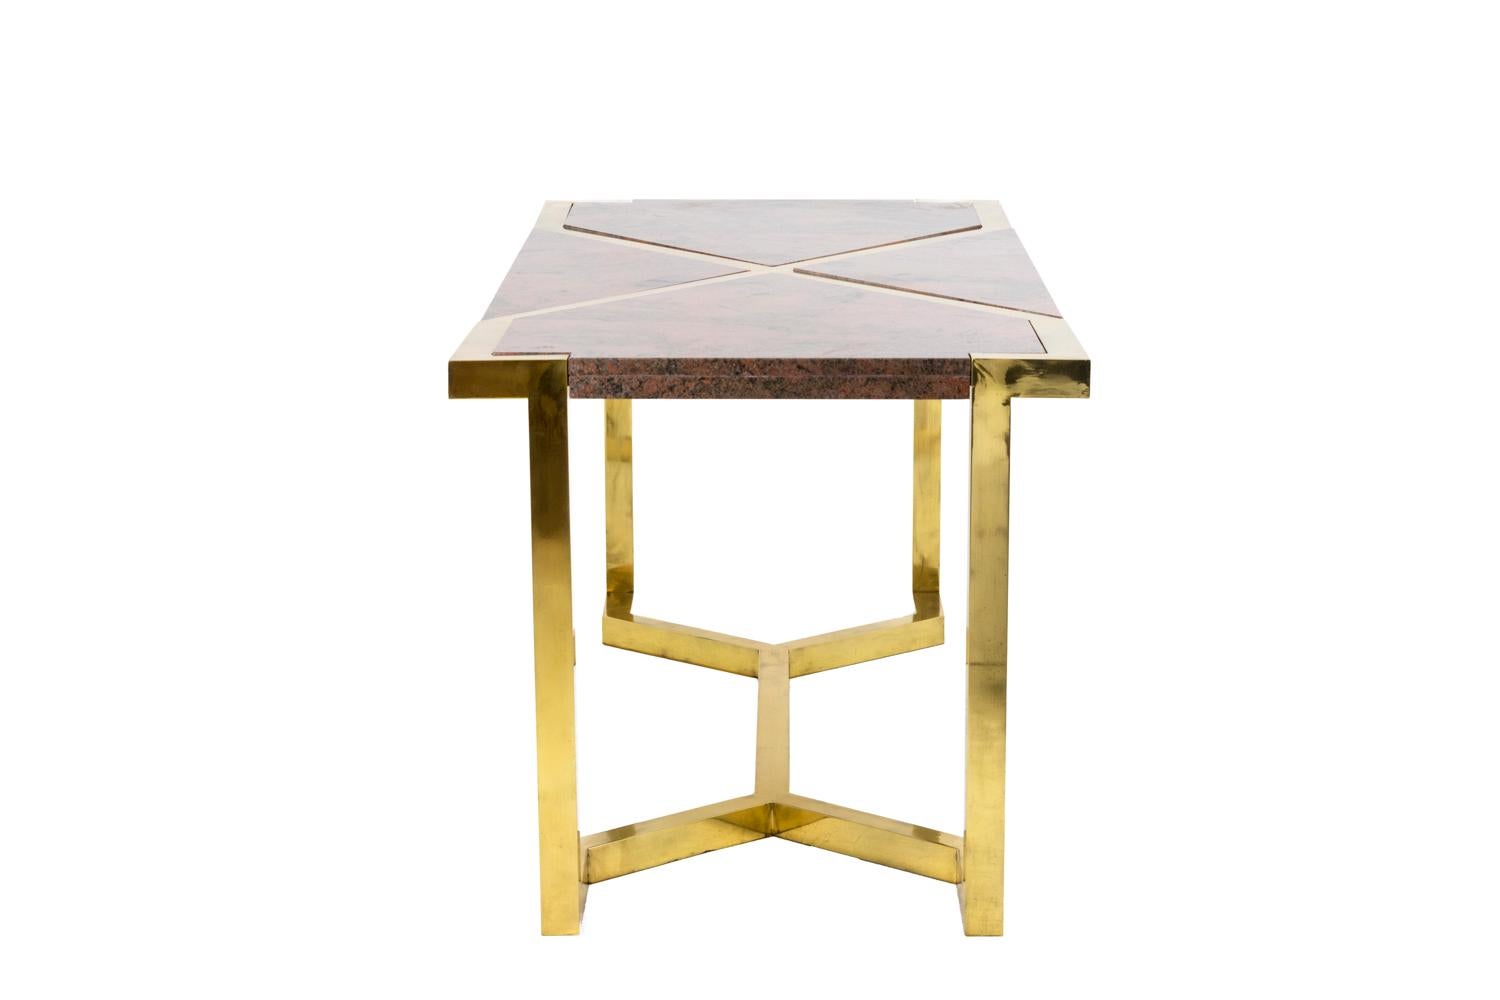 Table en laiton doré et granit rose dans le style de Cittone Oggi ou Nucci Valsecchi. Table reposant sur quatre pieds de forme carrée reliés entre eux par une traverse en X. 
Plateau composé d'un cadre en laiton doré dans la ligne des pieds, formant